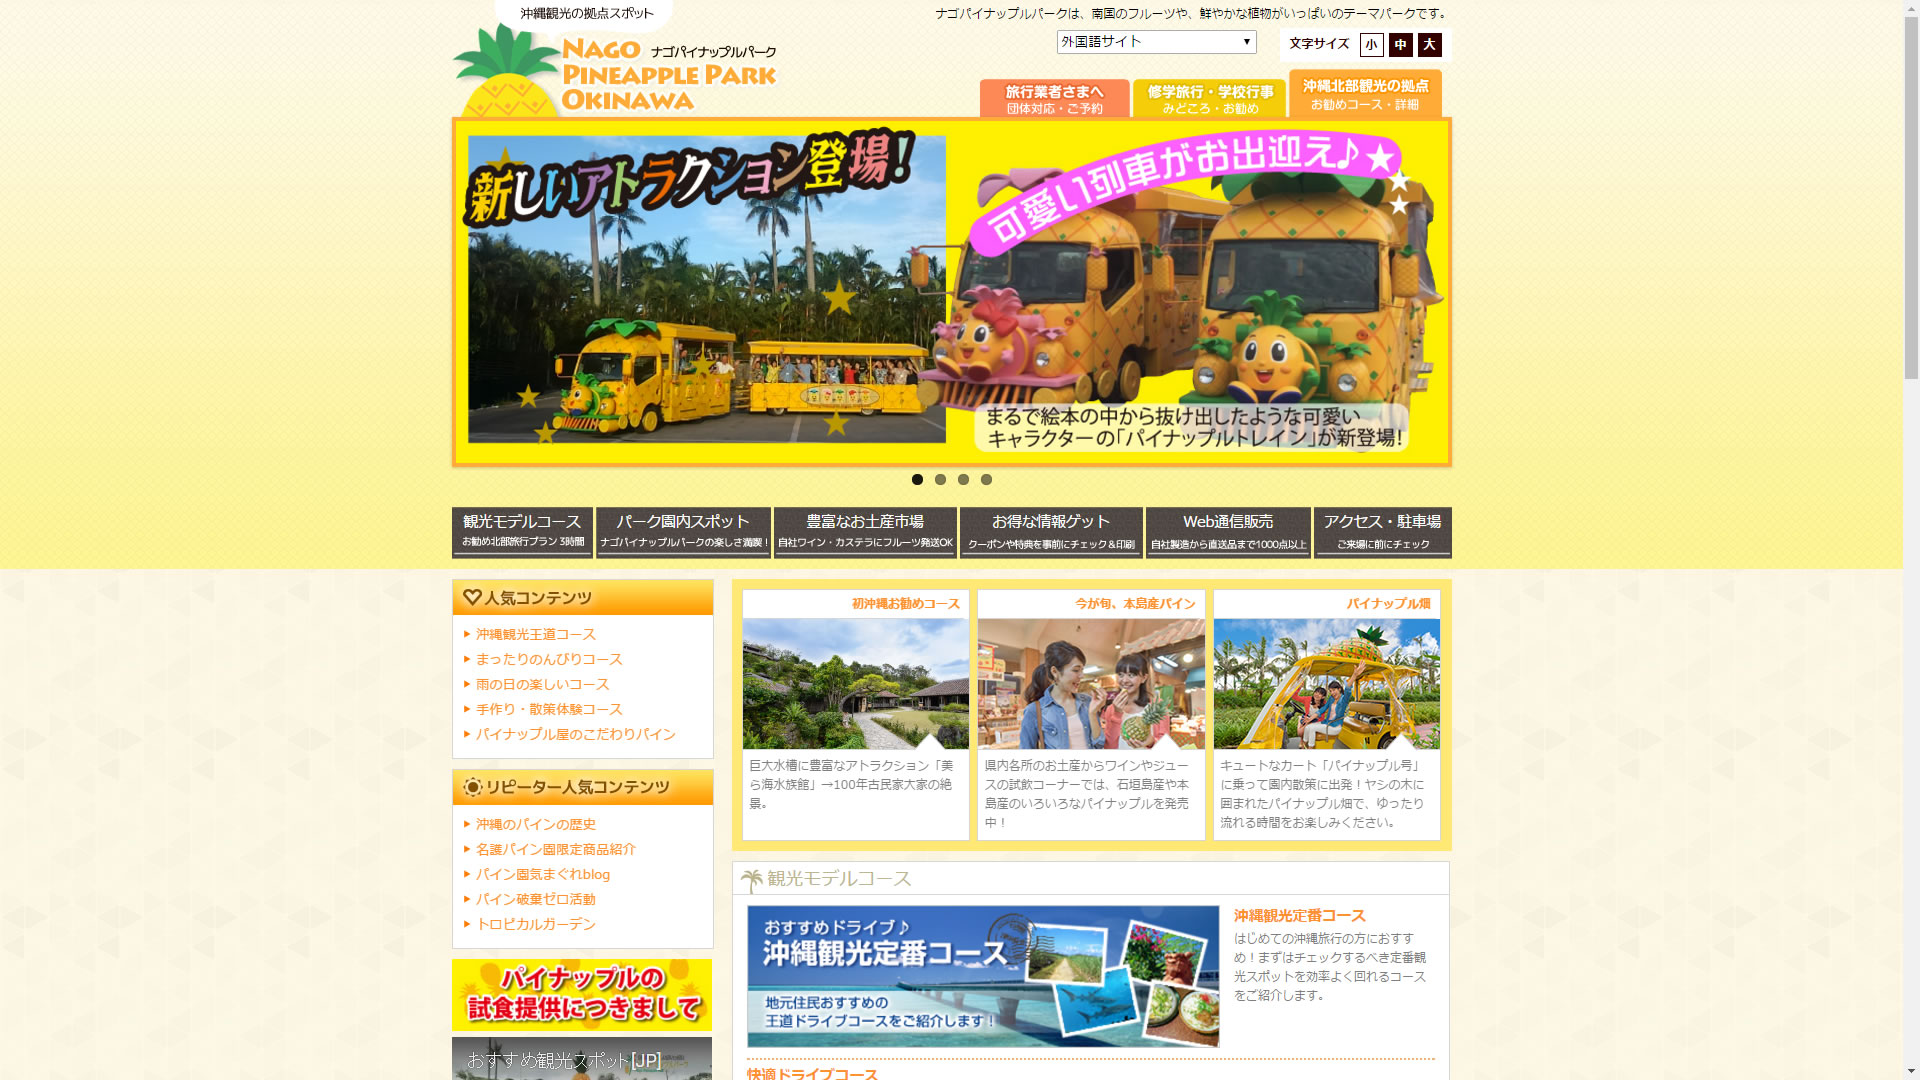 パイナップルパーク 沖縄情報webサイト ちゅらなび Com